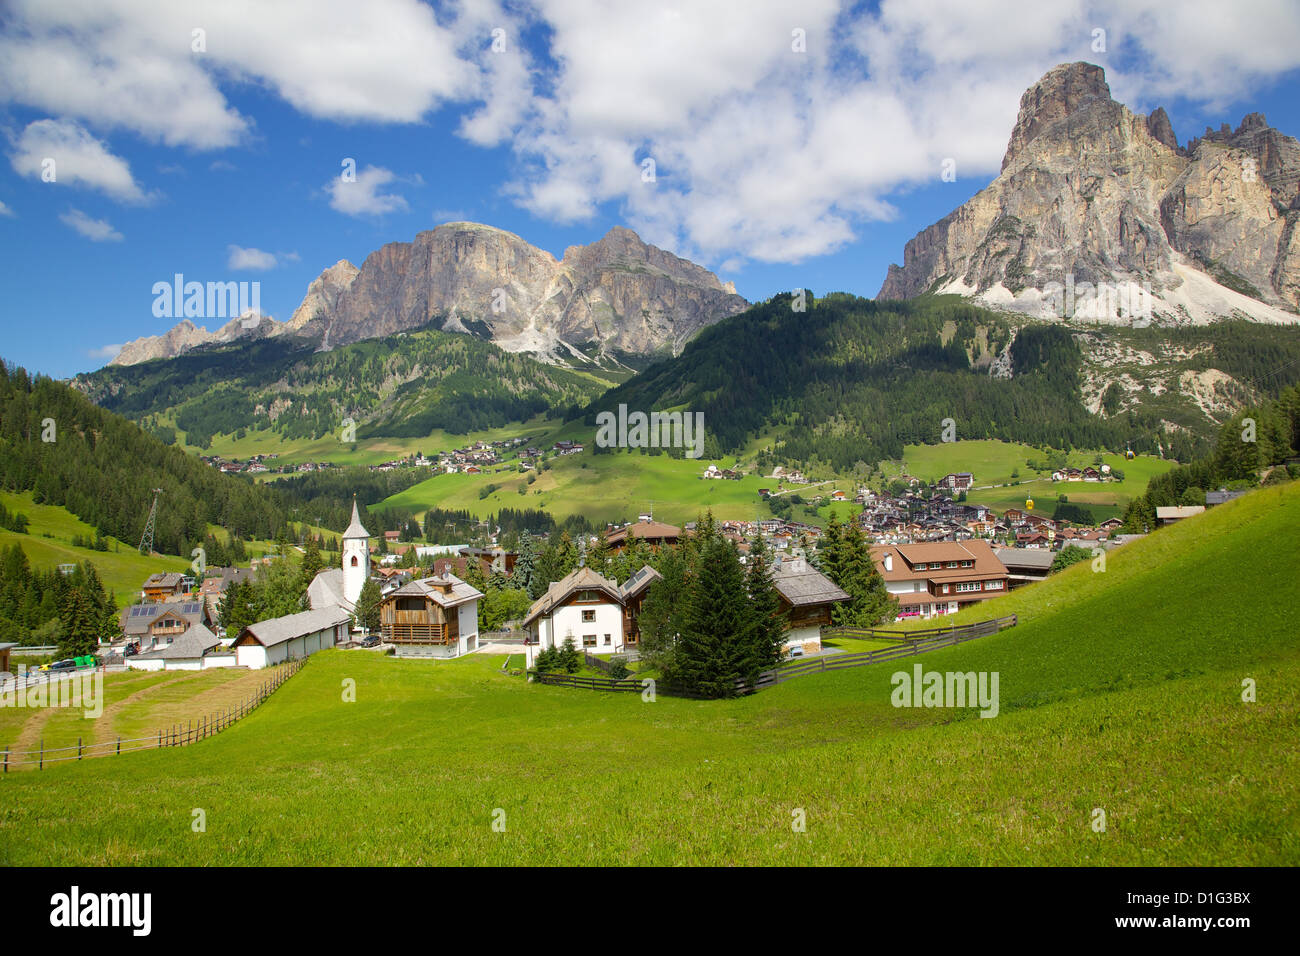 Corvara and Sass Songher Mountain, Badia Valley, Bolzano Province, Trentino-Alto Adige/South Tyrol, Italian Dolomites, Italy Stock Photo